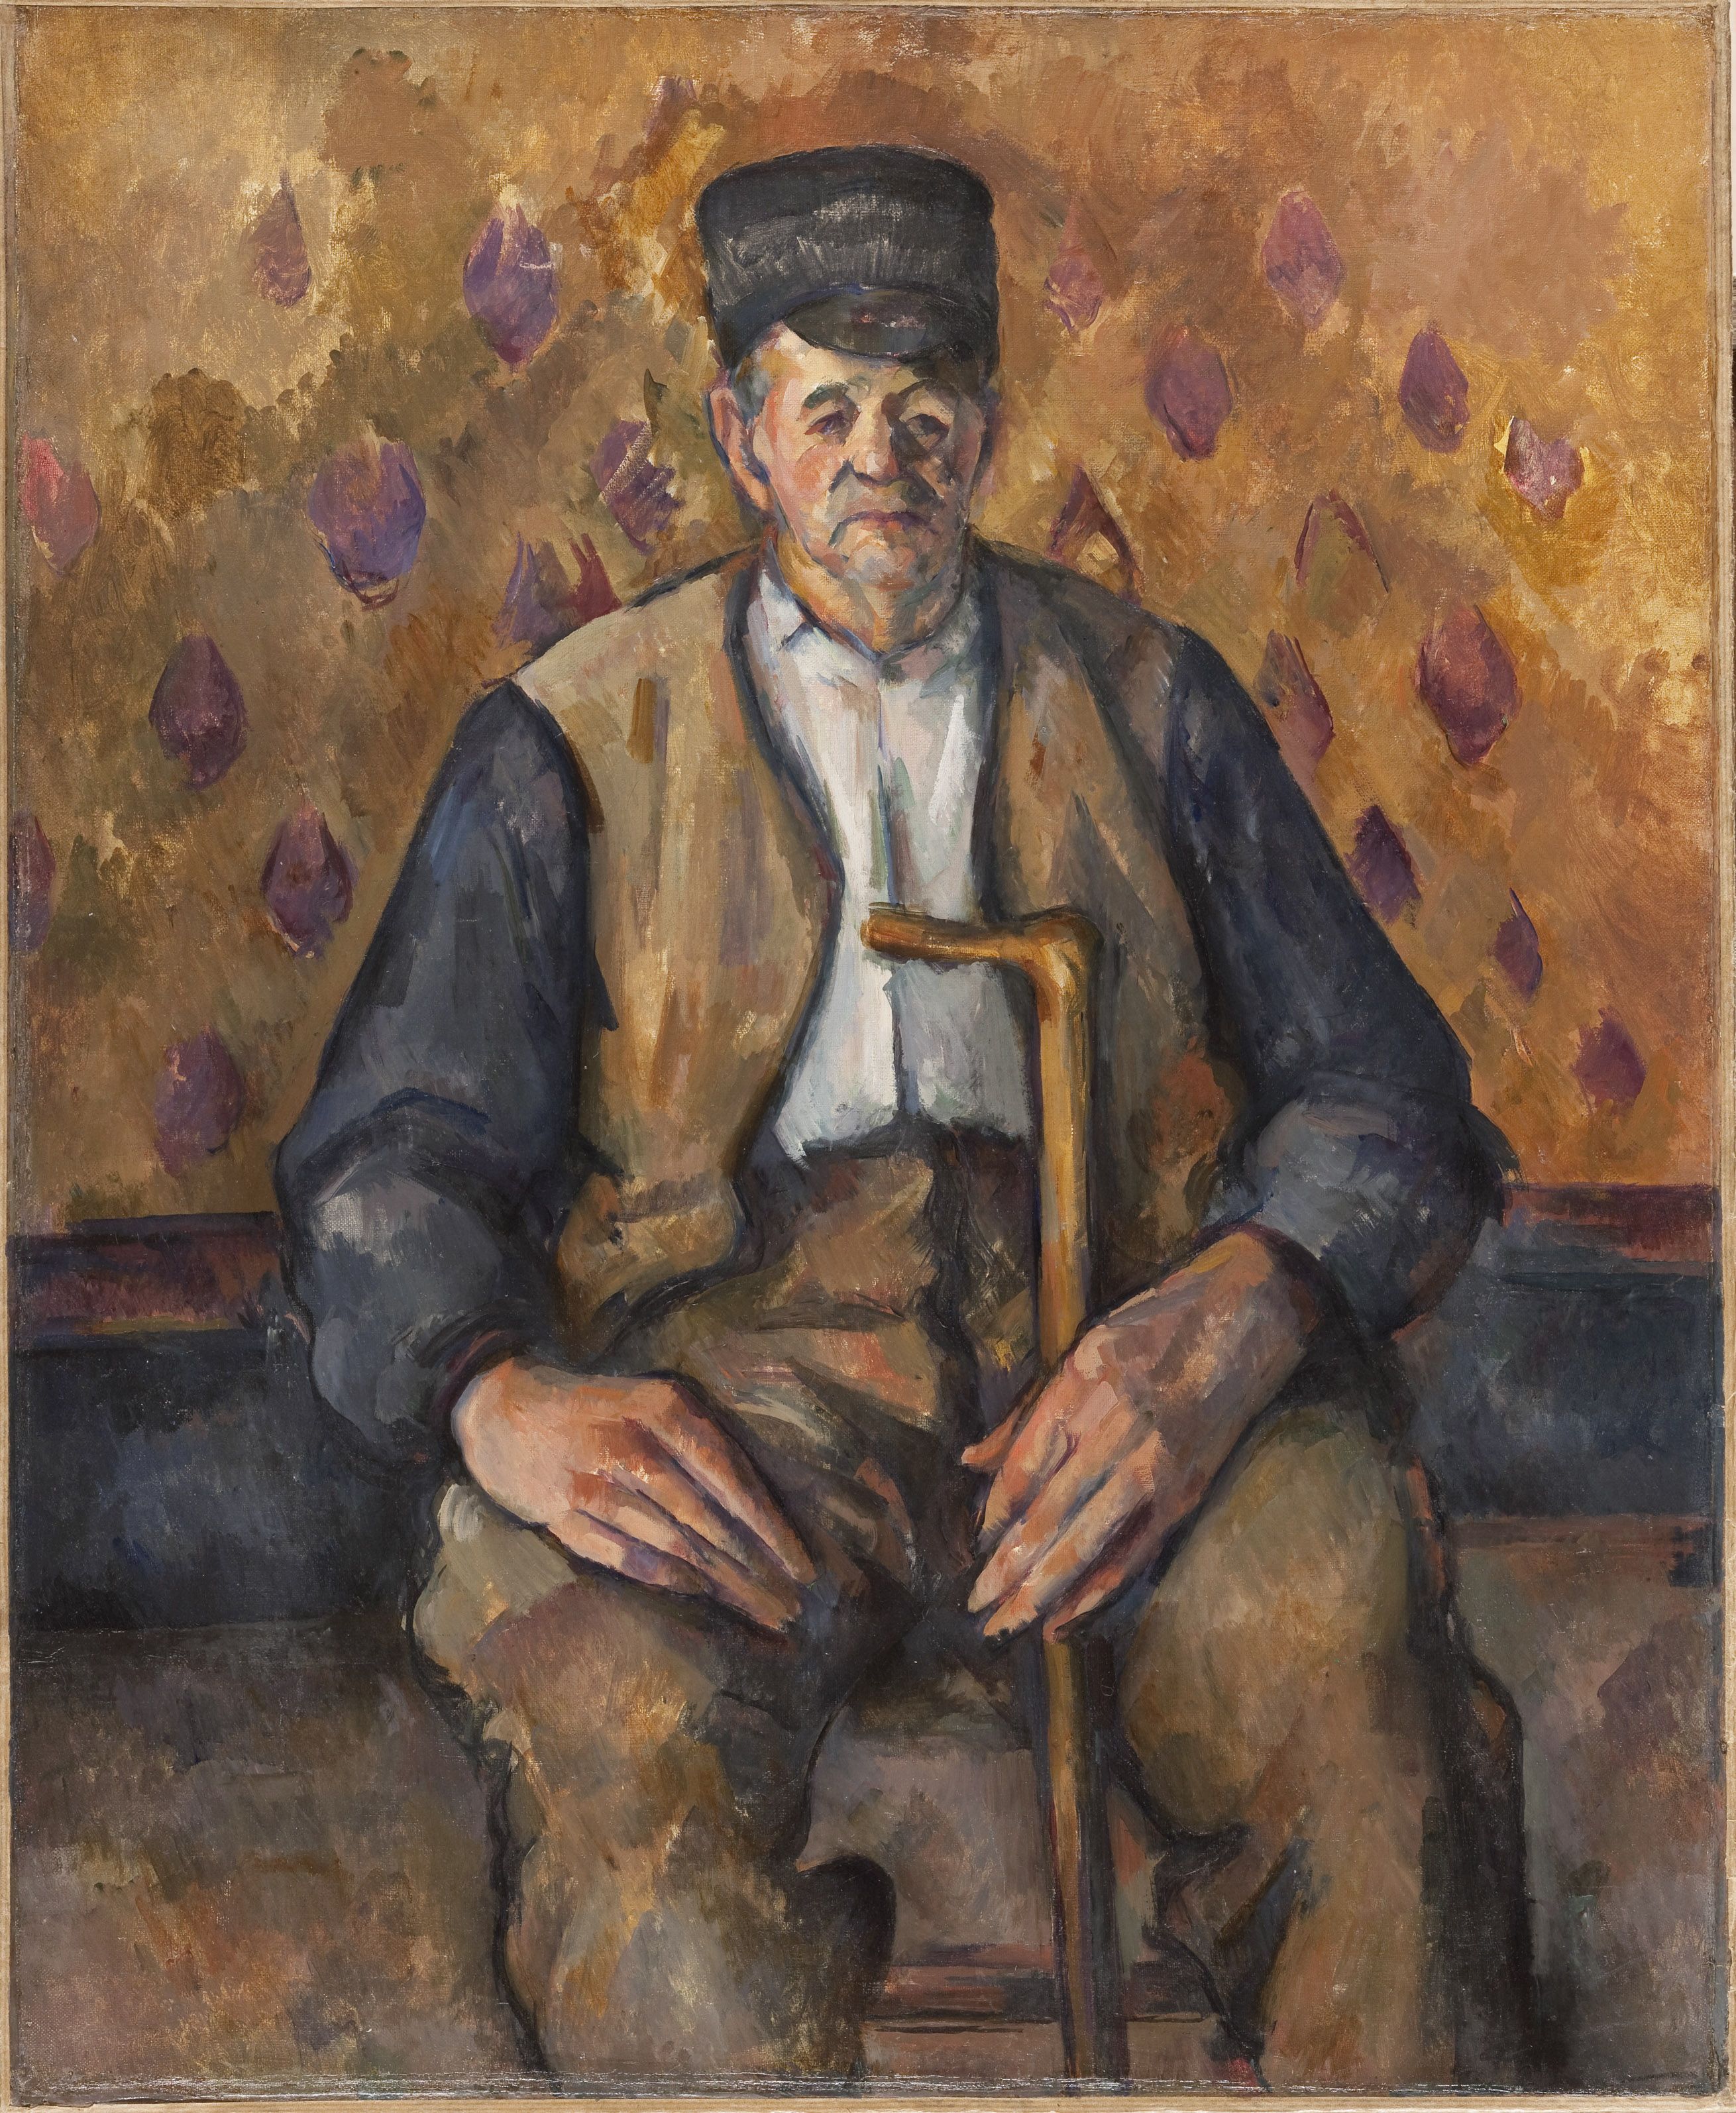 Portraits de Cézanne, Orsay Museum, Paris: 13 June- 24 September 2017